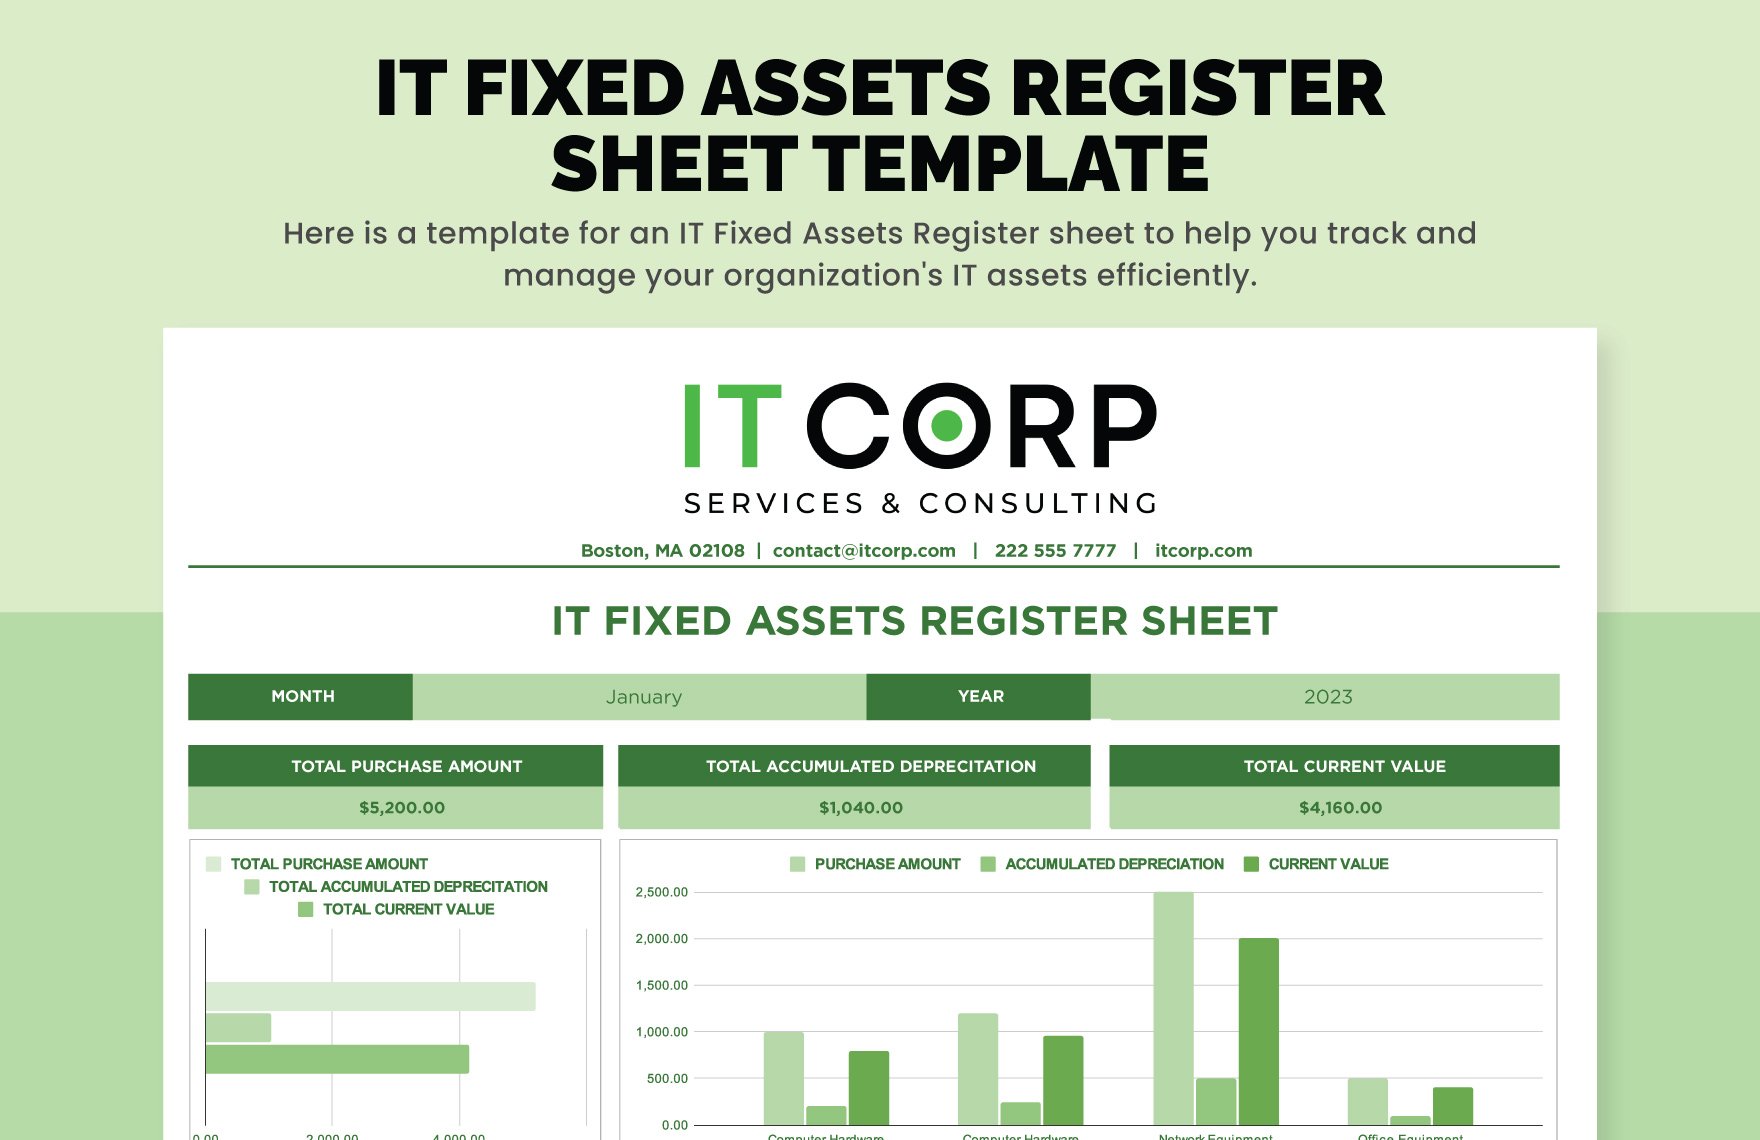 IT Fixed Assets Register Sheet Template